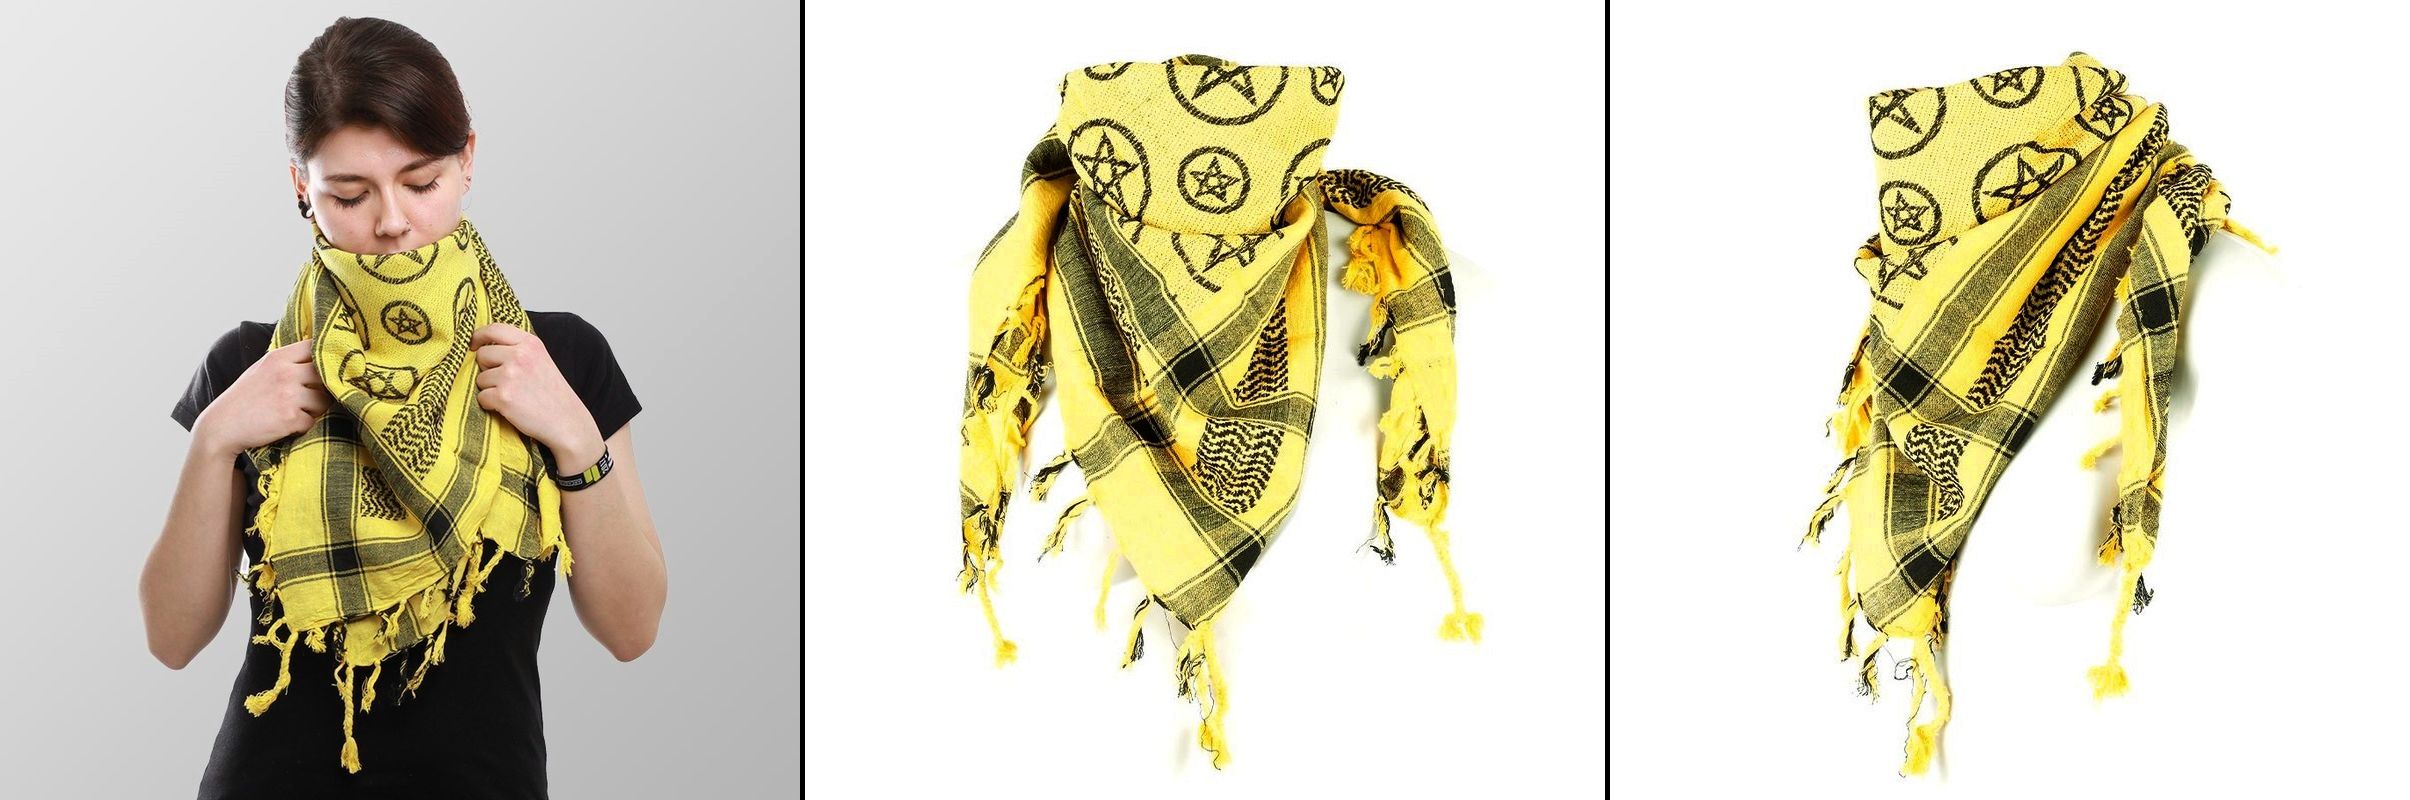 Šátek Arafat Palestina žlutý s pentagramy